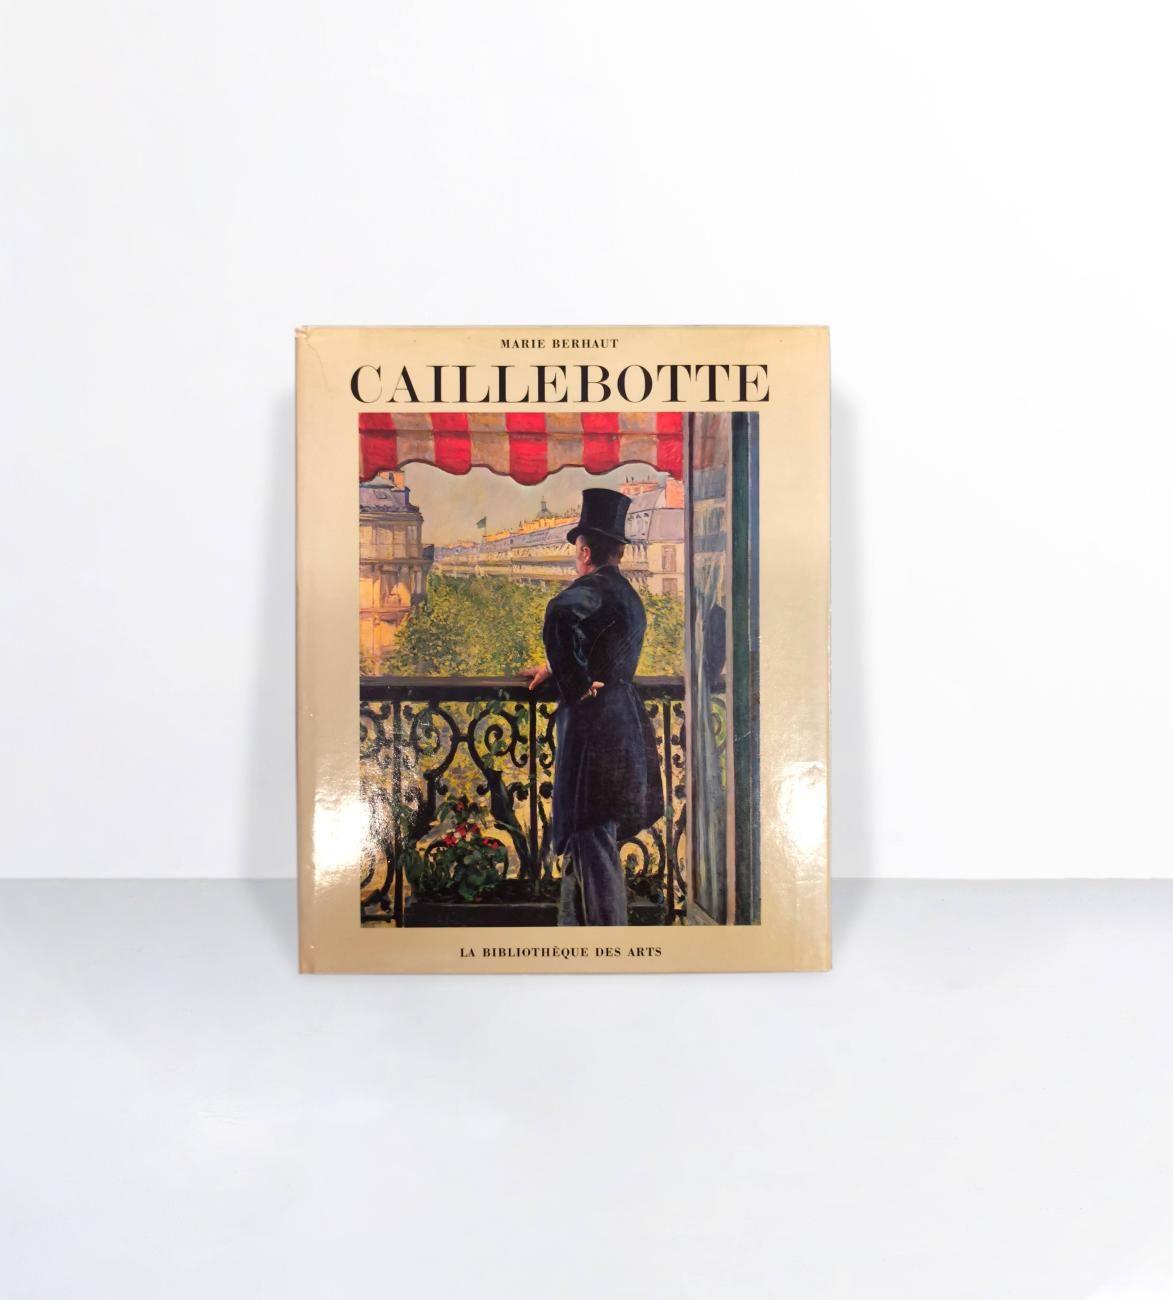 Catalogue raisonné Caillebotte : sa vie, son oeuvre - Marie Berhaut